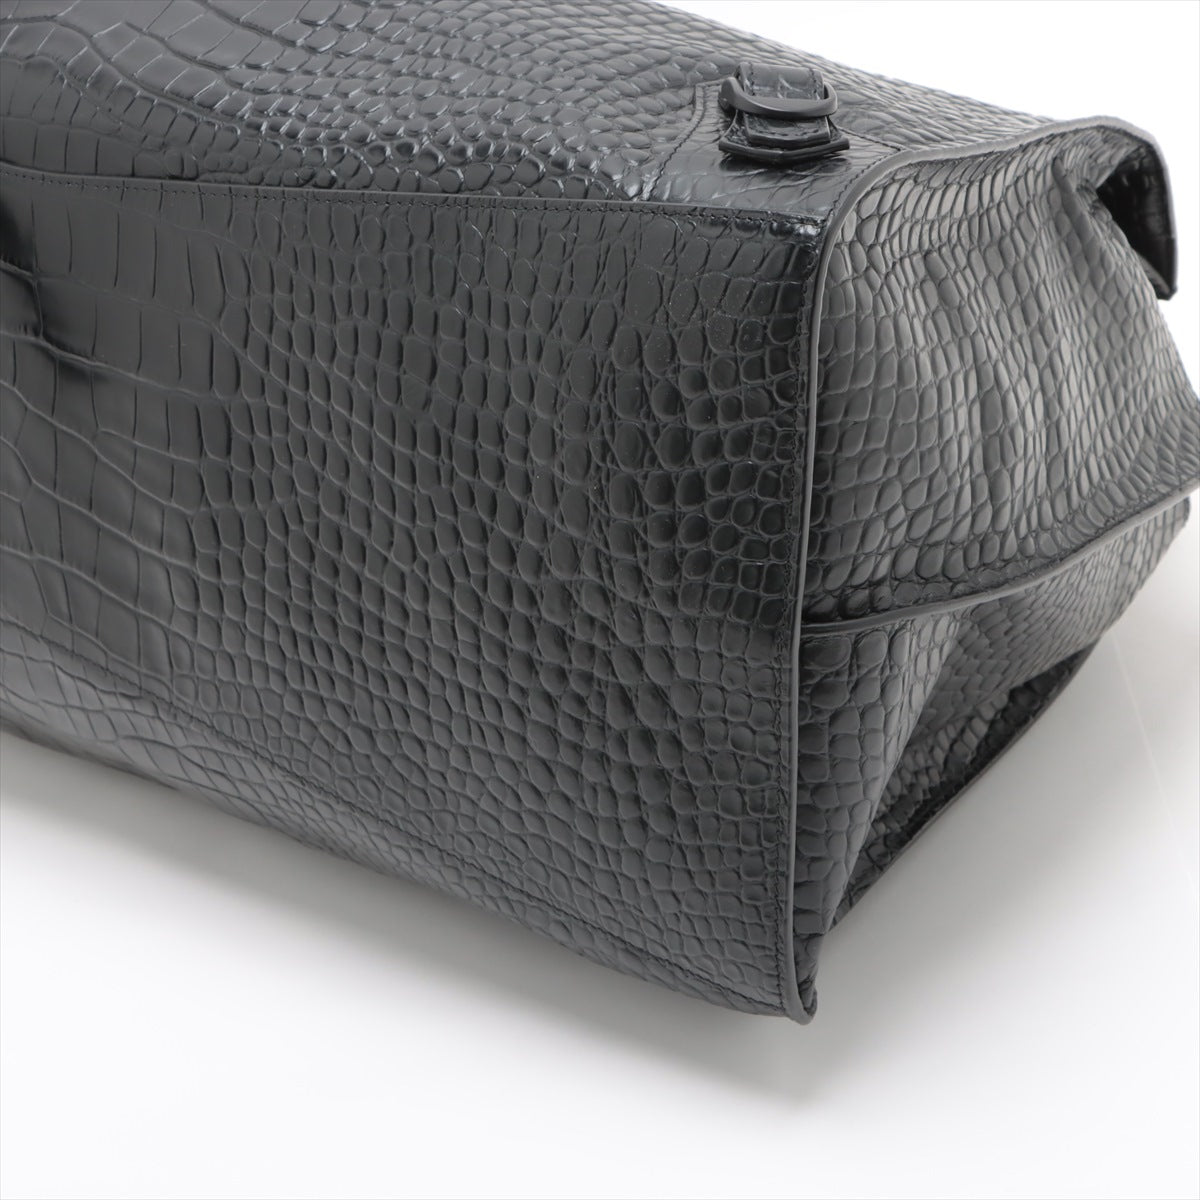 Balenciaga Neo-classics Moc croc 2way handbag Black 660005